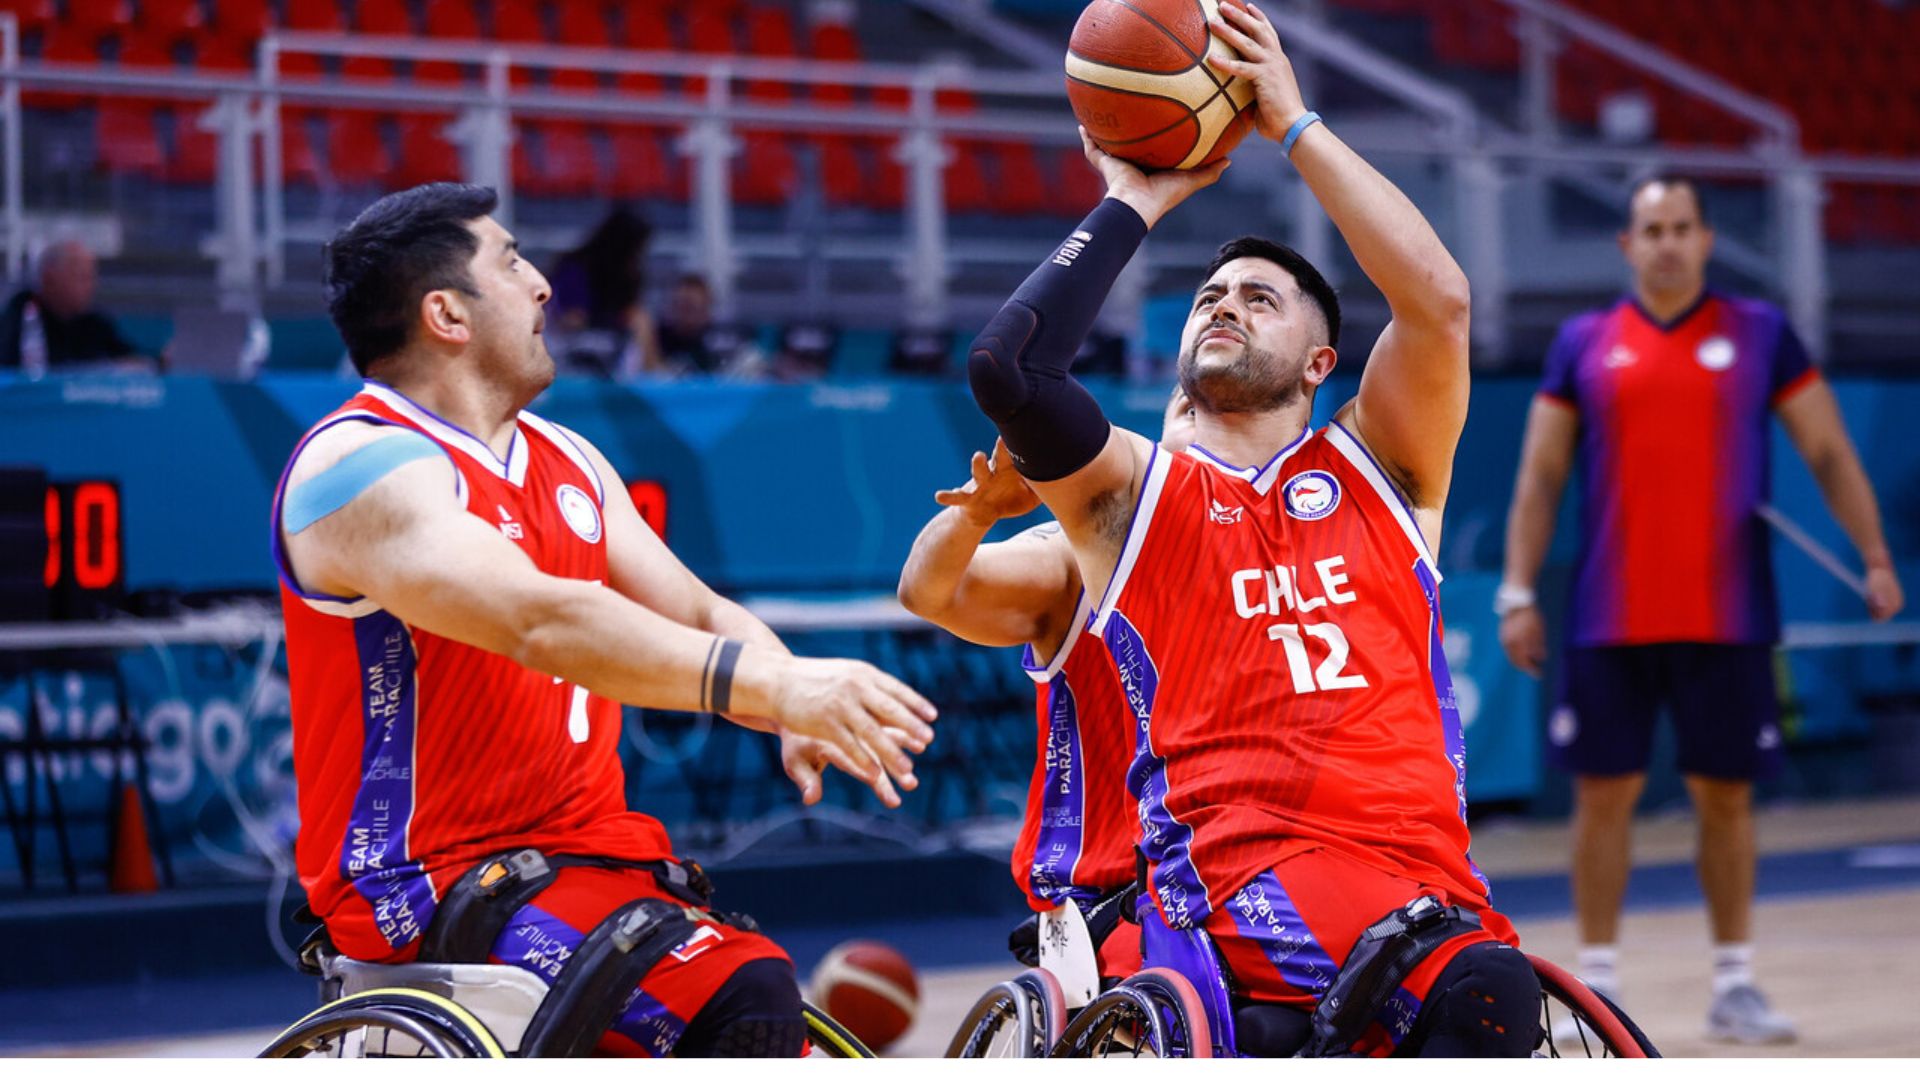 Así son los deportes: Básquetbol en silla de ruedas, judo y para powerlifting